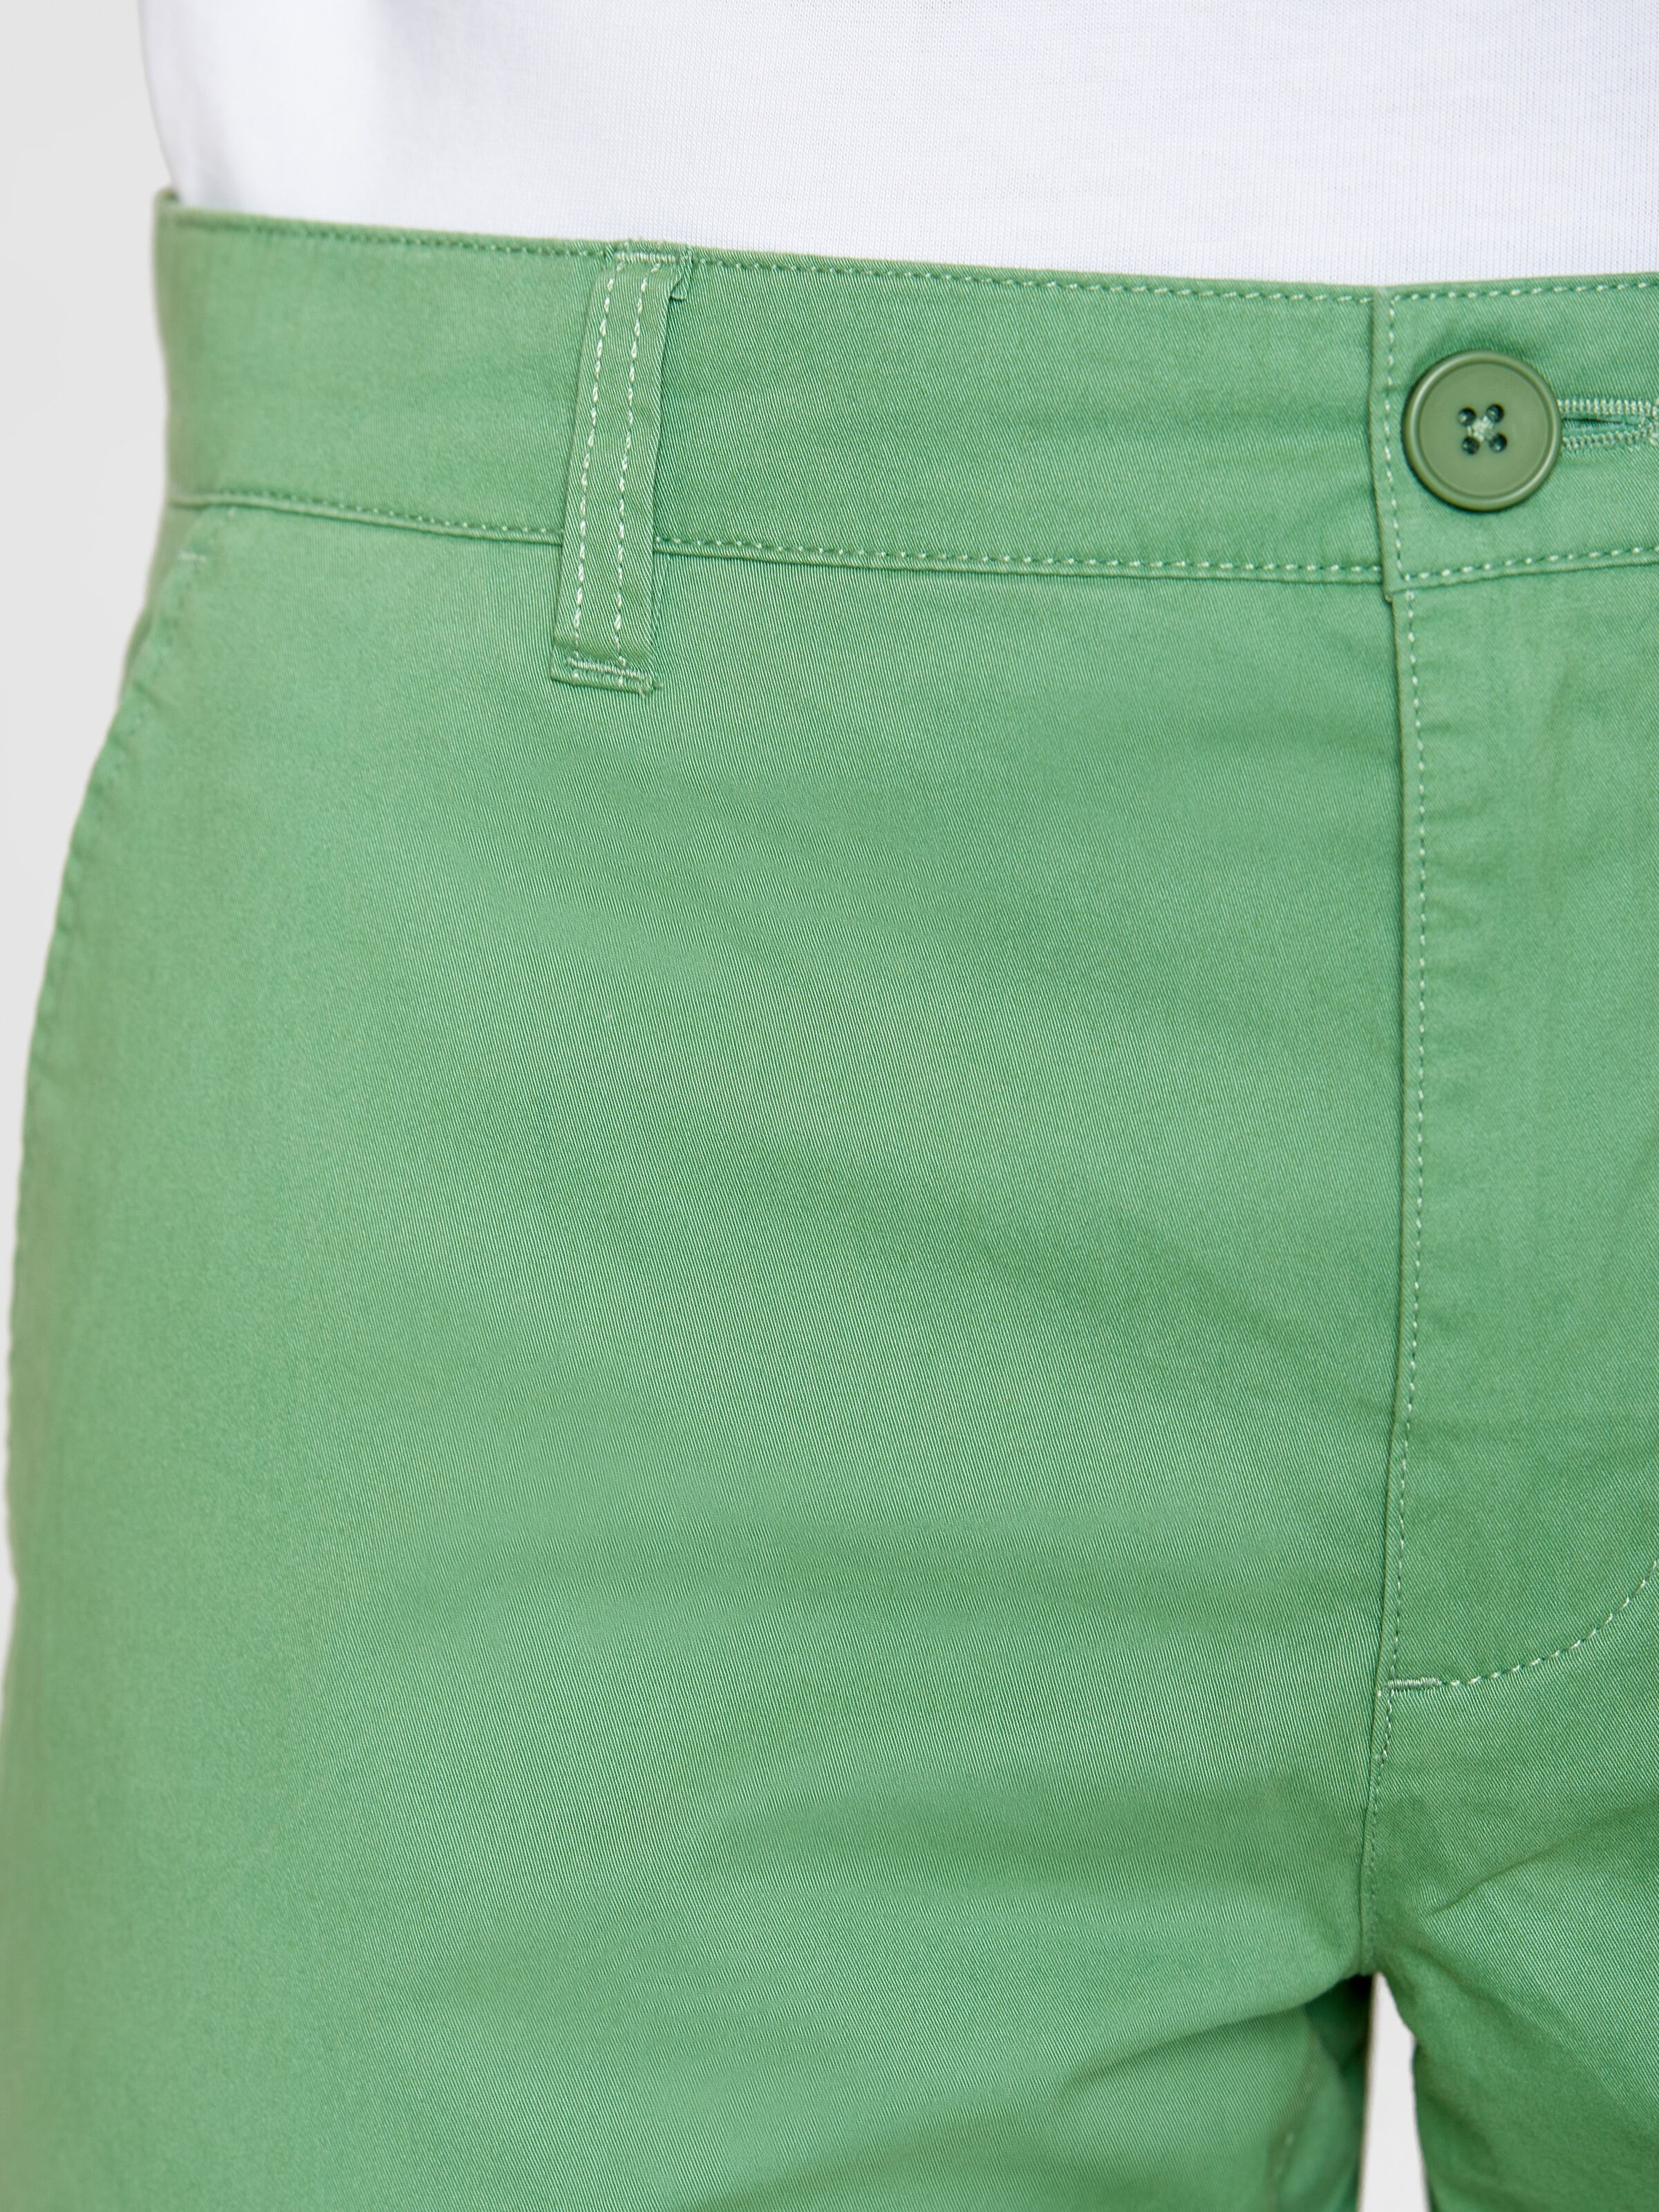 Leichte Chino-Shorts CHUCK Shale Green